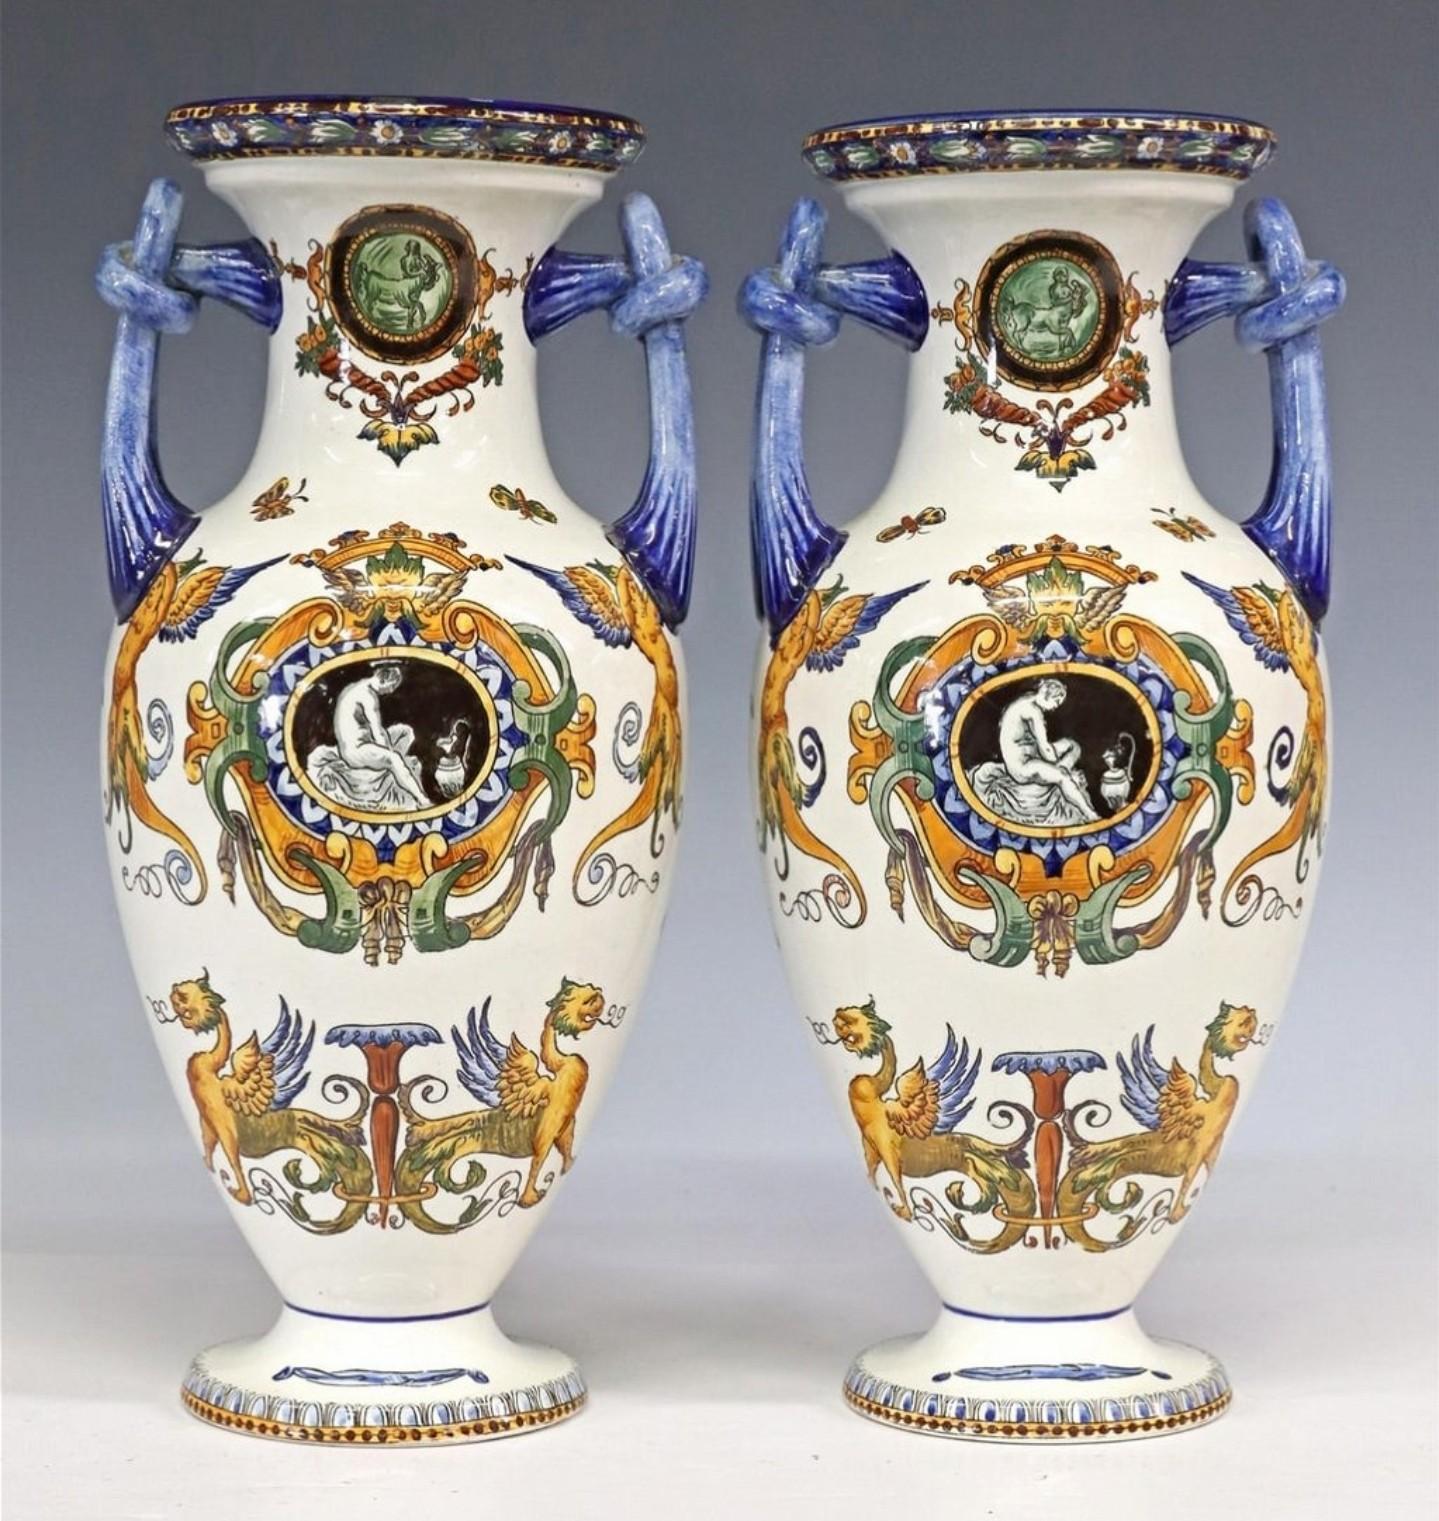 Glazed Pair of French Gien Fiance Renaissance Revival Ceramic Vases